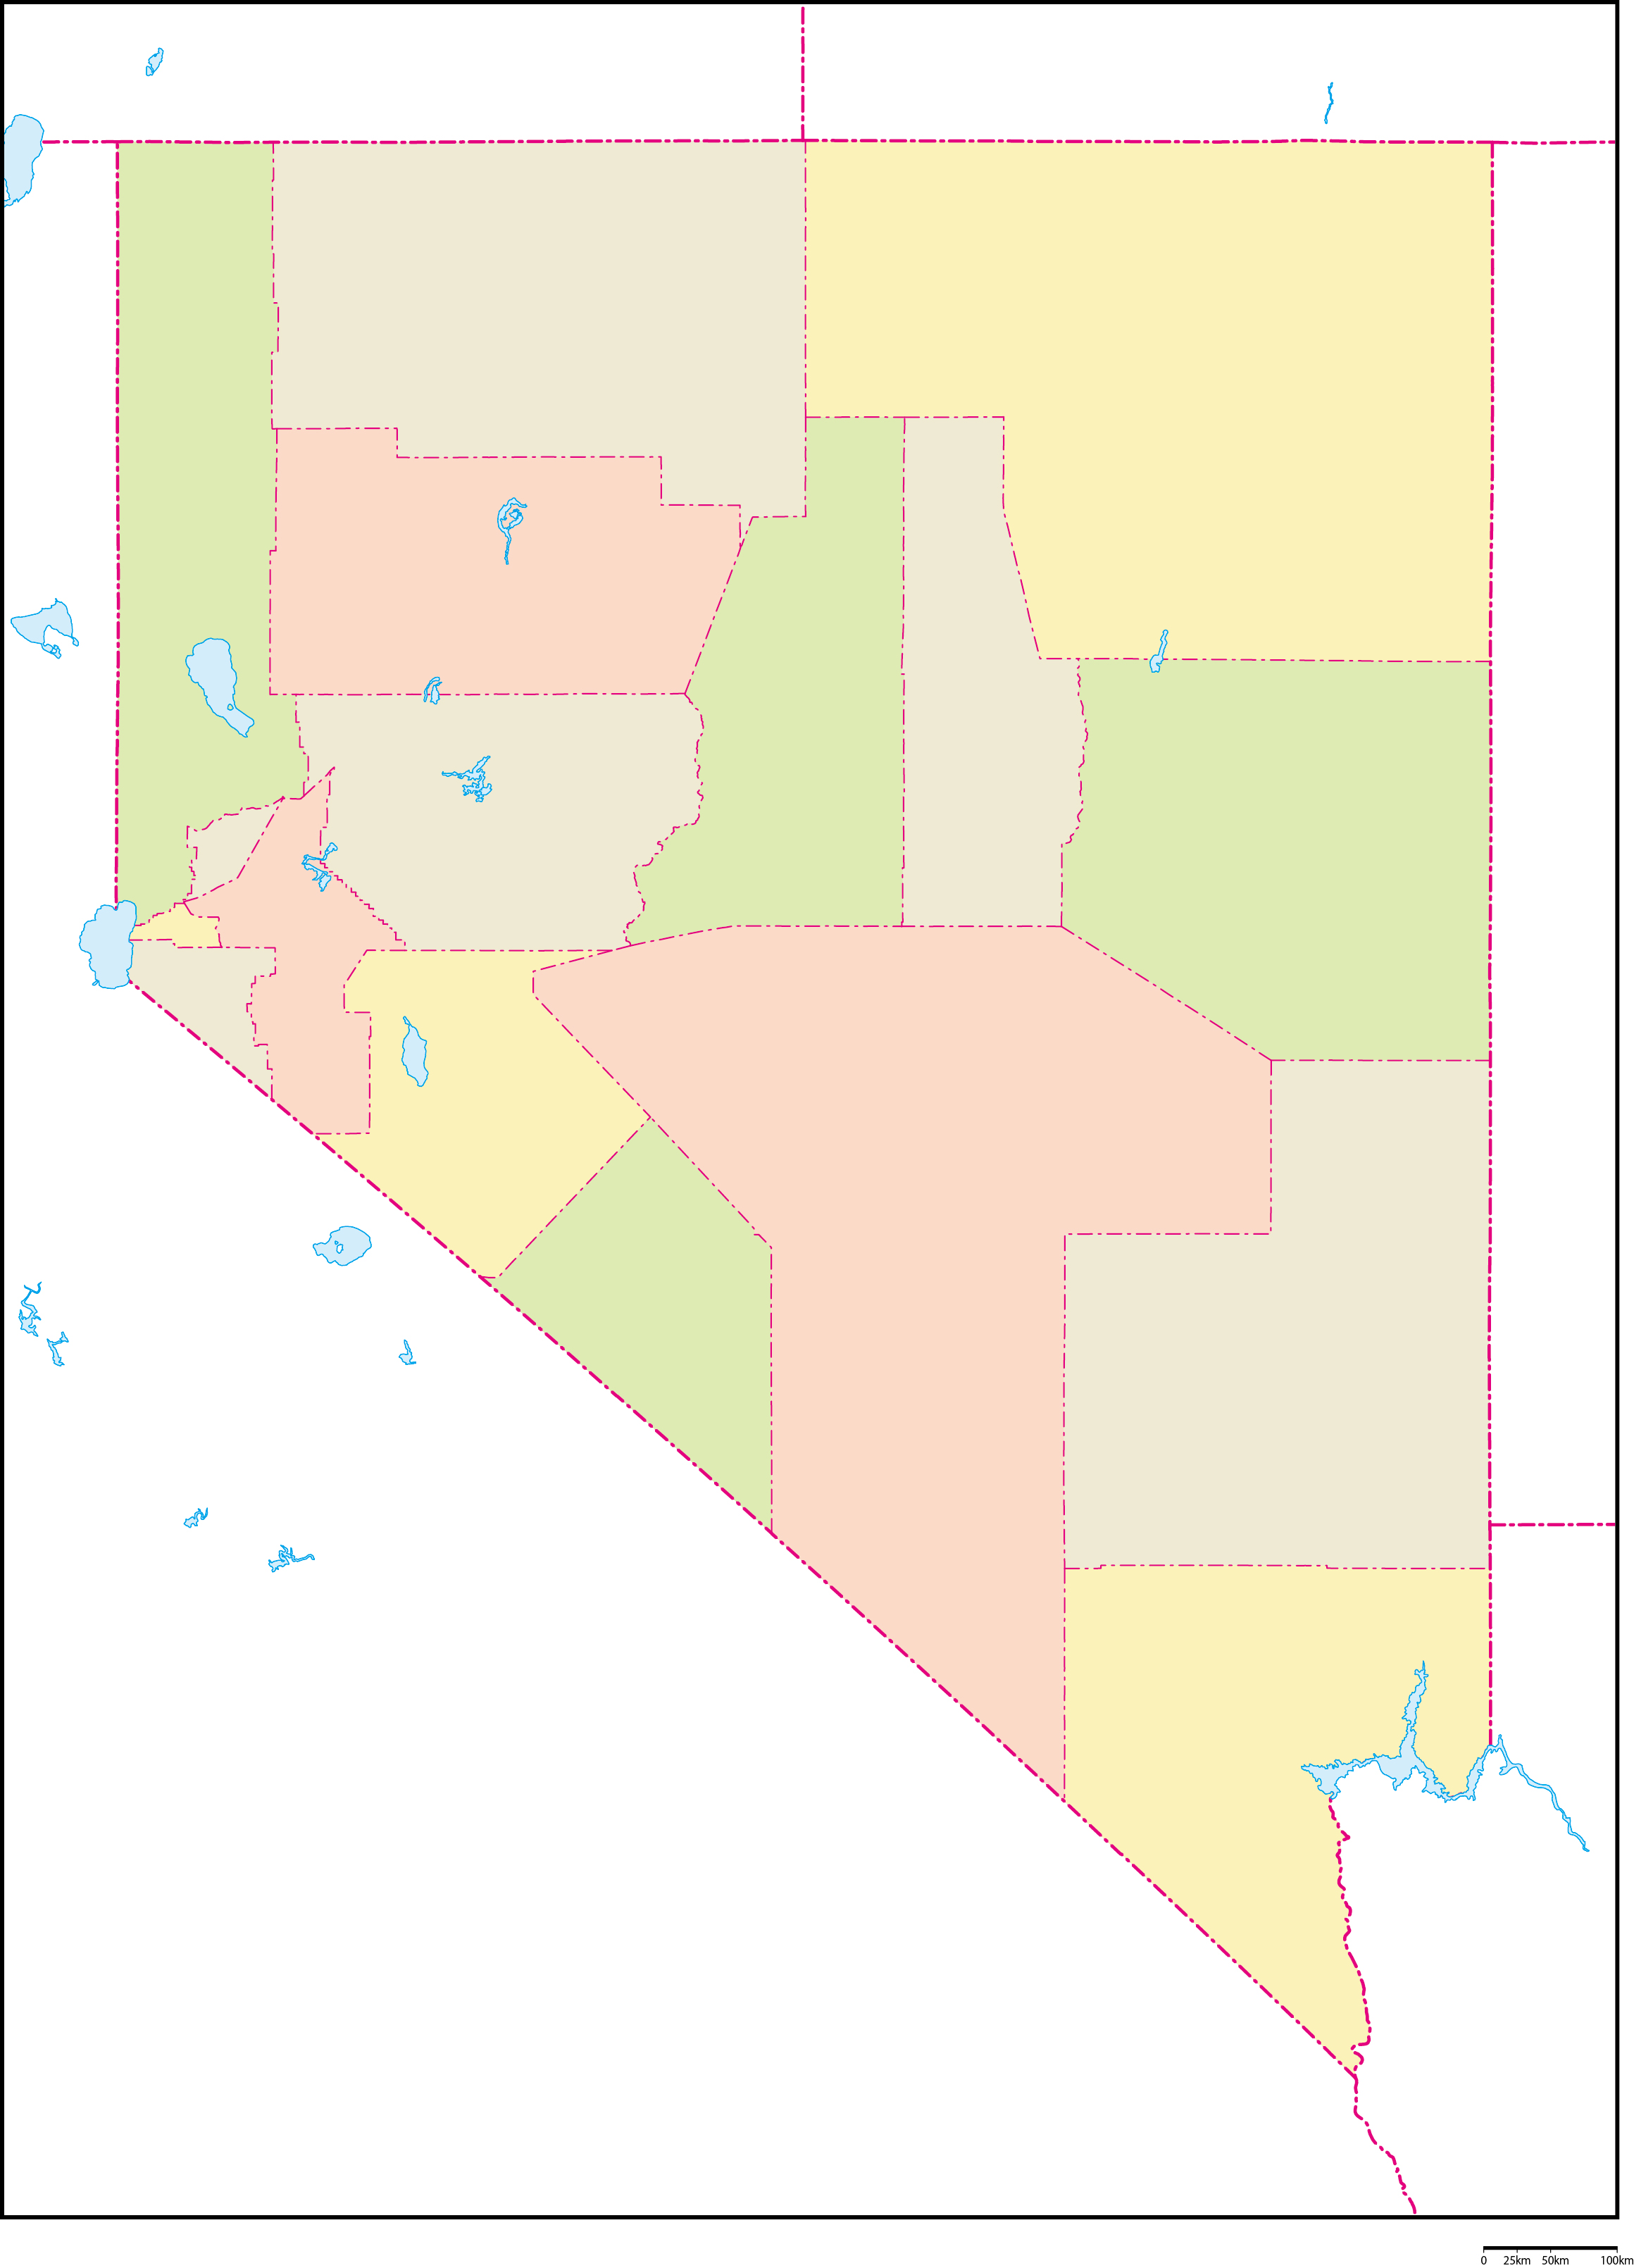 ネバダ州郡色分け地図フリーデータの画像